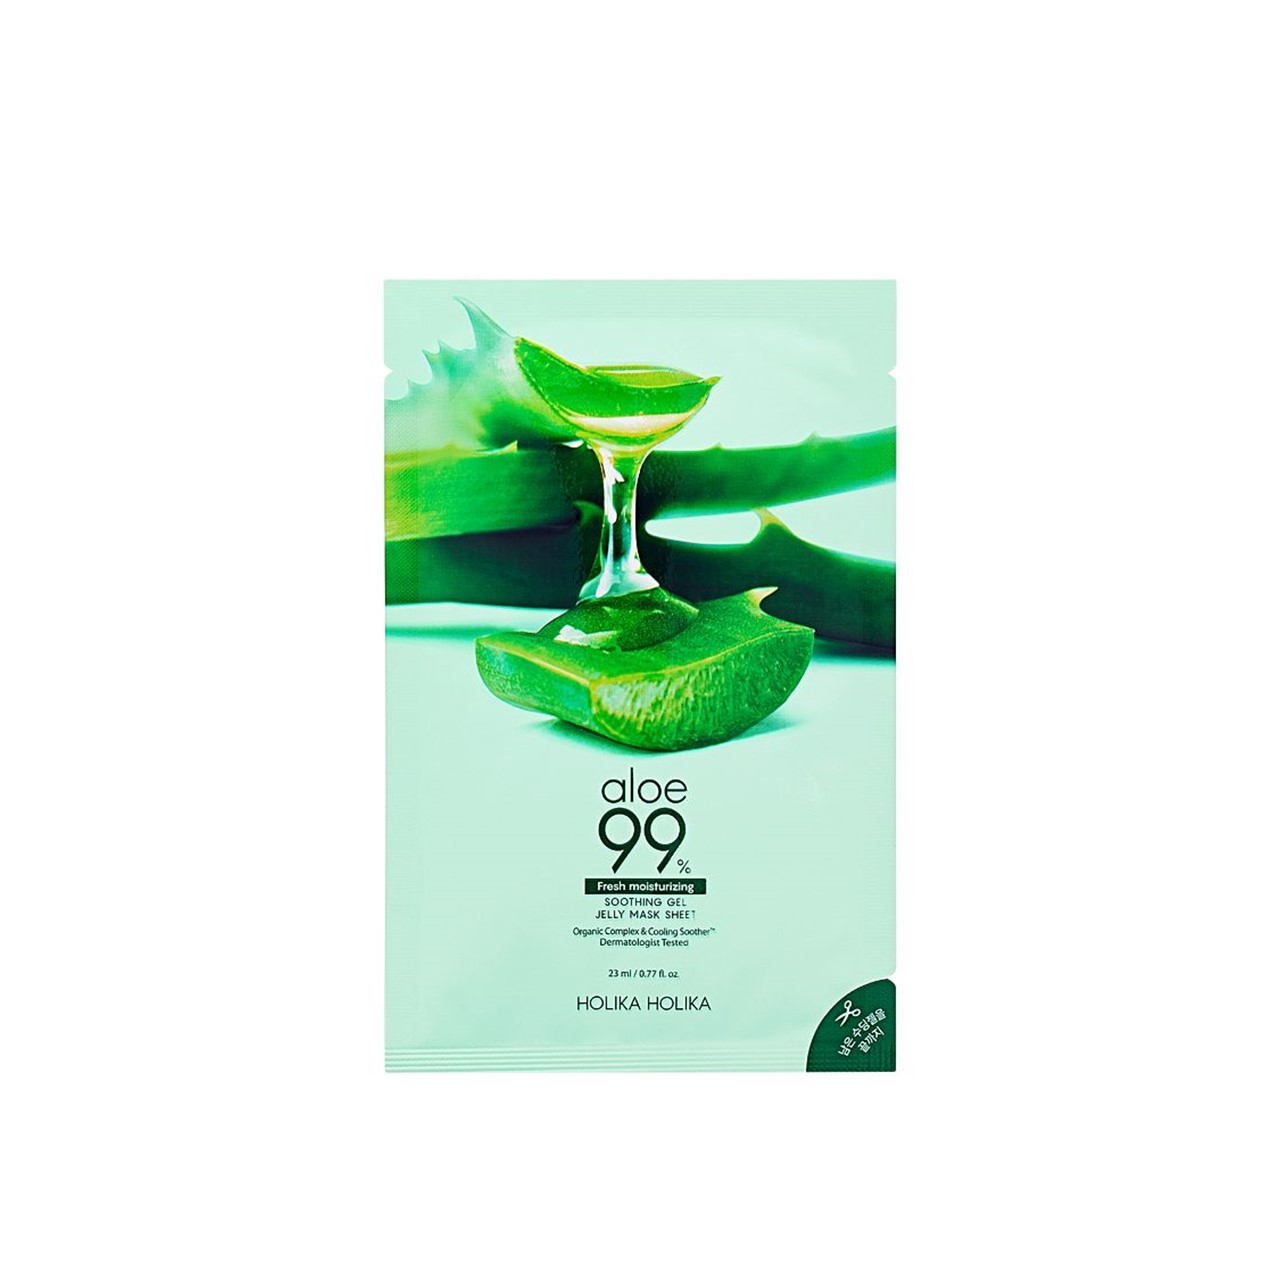 Holika Holika Aloe 99% Soothing Gel Jelly Mask Sheet 23ml (0.78fl oz)